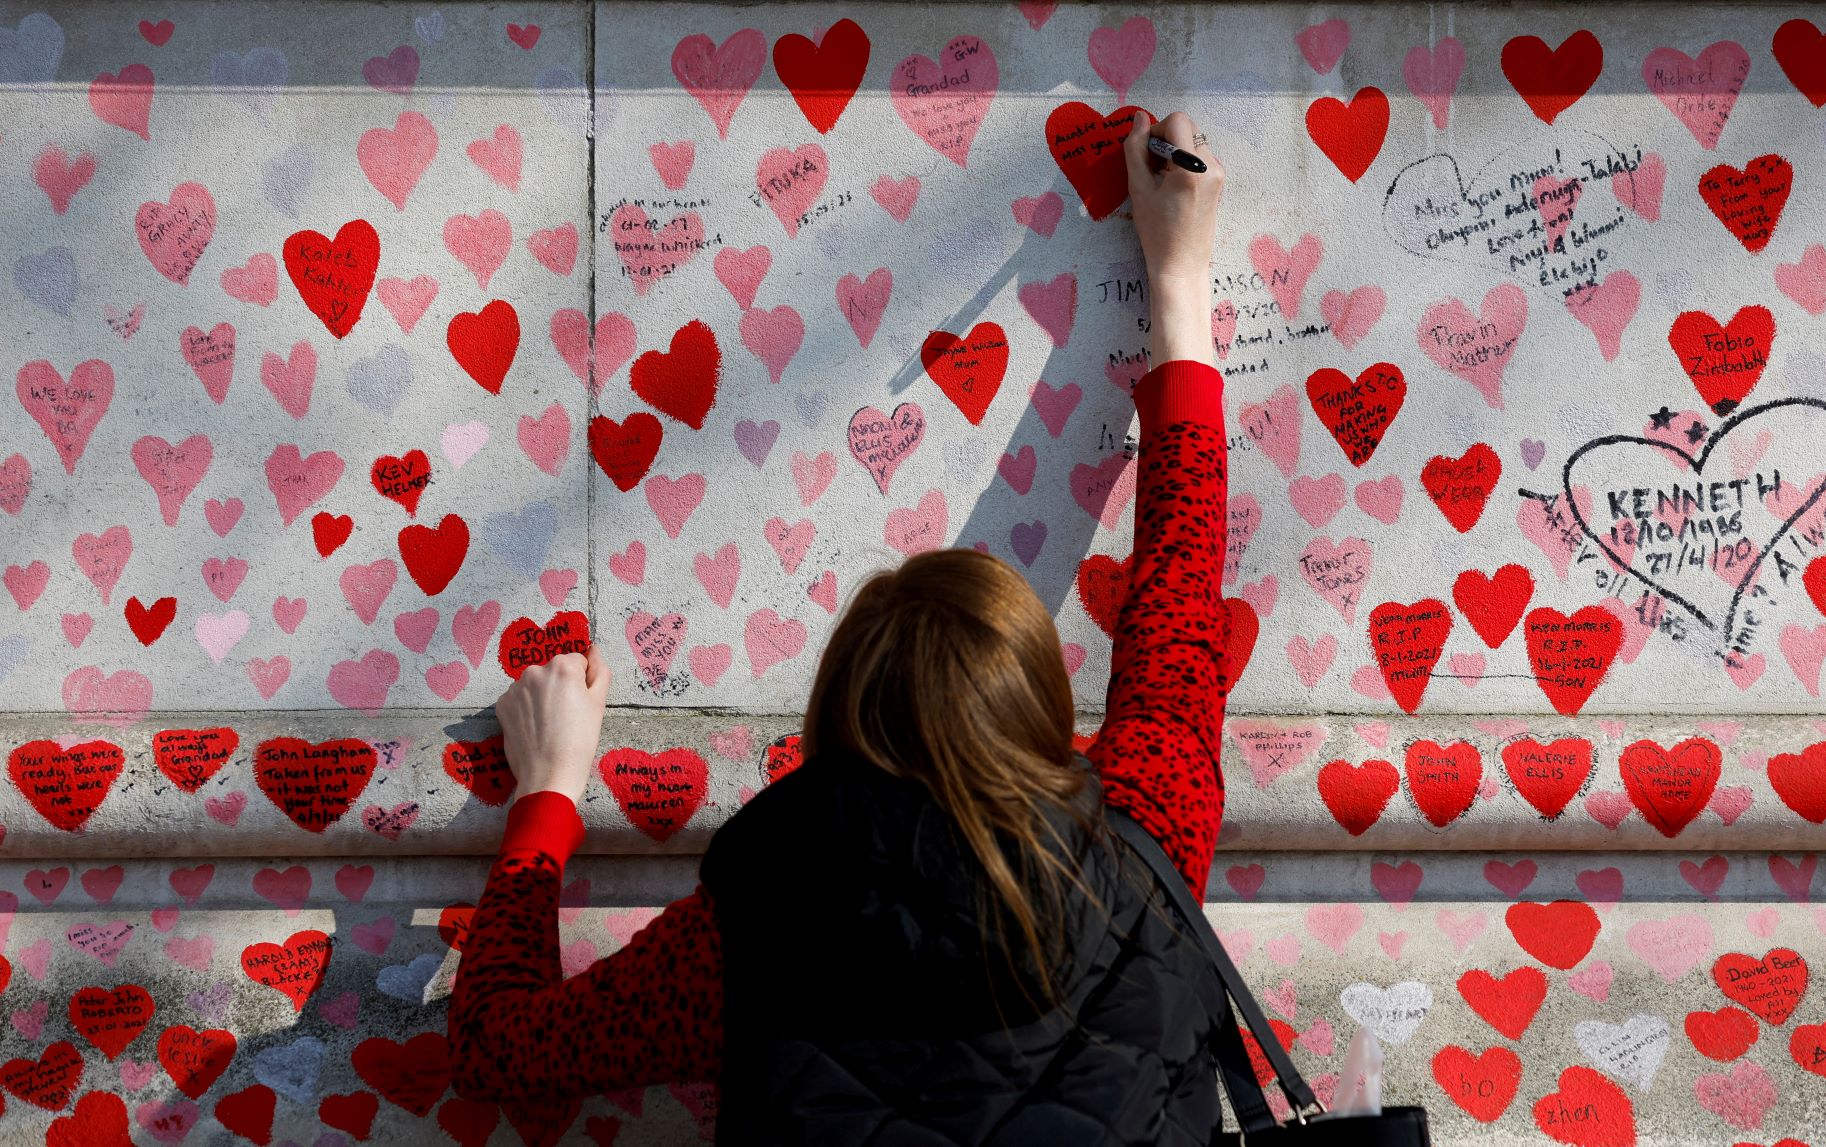 تدوين رسالة على "الجدار الذكرى الوطنية لكوفيد" في لندن، بالتزامن مع الذكرى الثانية لأول إغلاقات كورونا في المملكة المتحدة